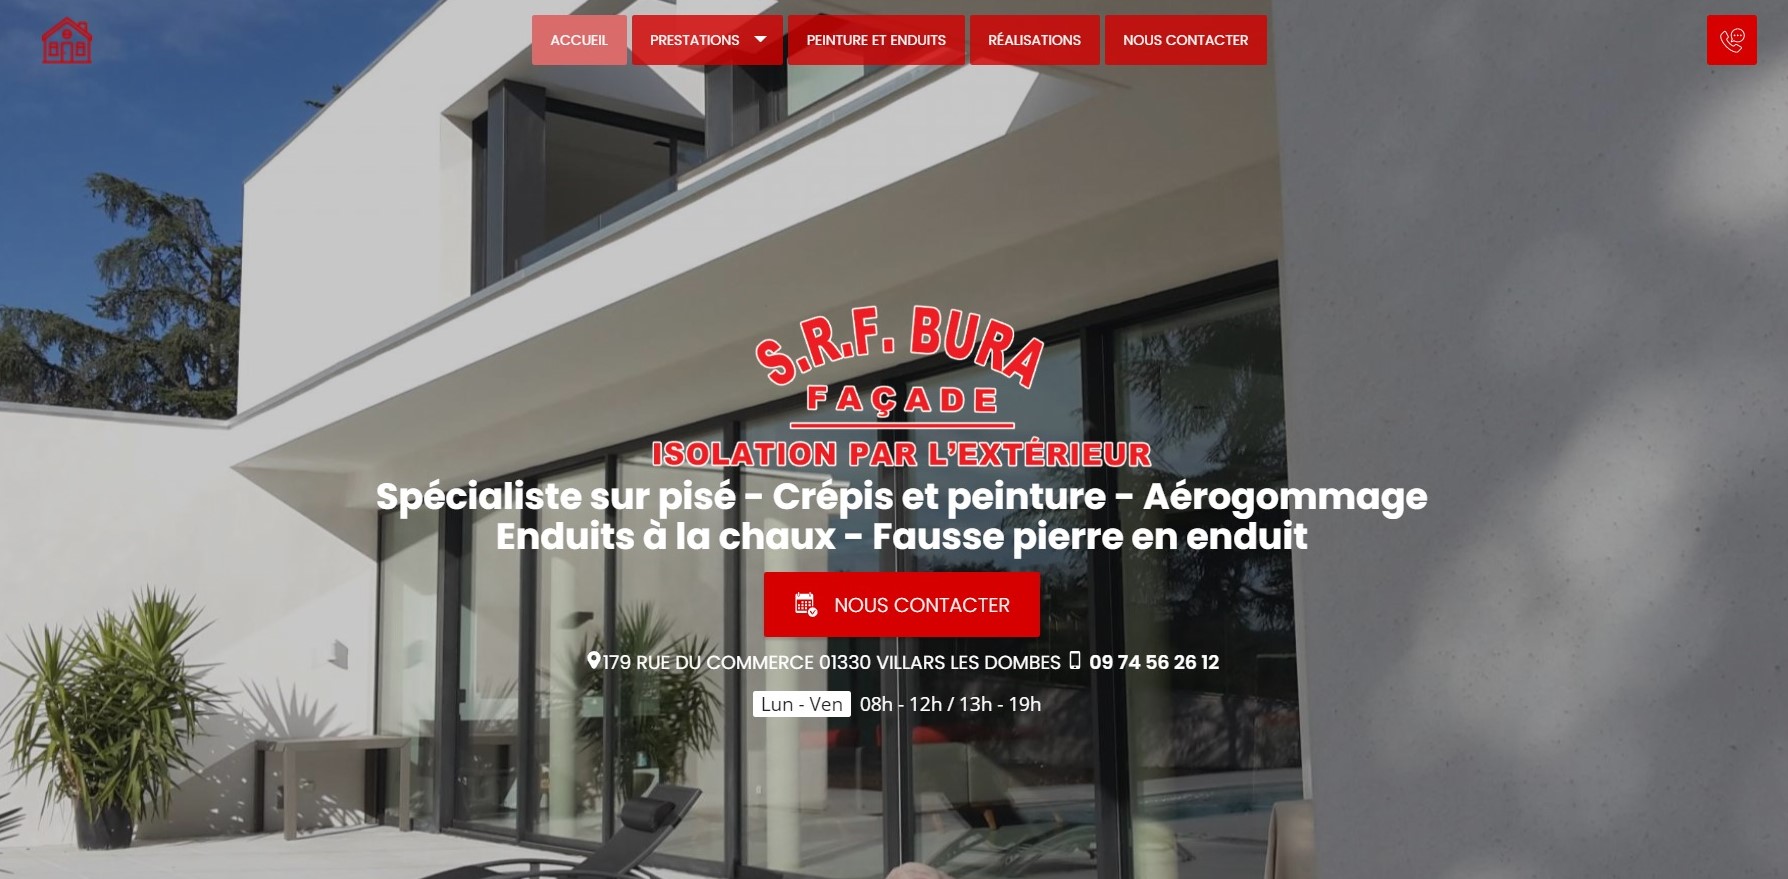  S.R.F.Bura SAS - Entreprise d’Isolation de Bourg-en-Bresse